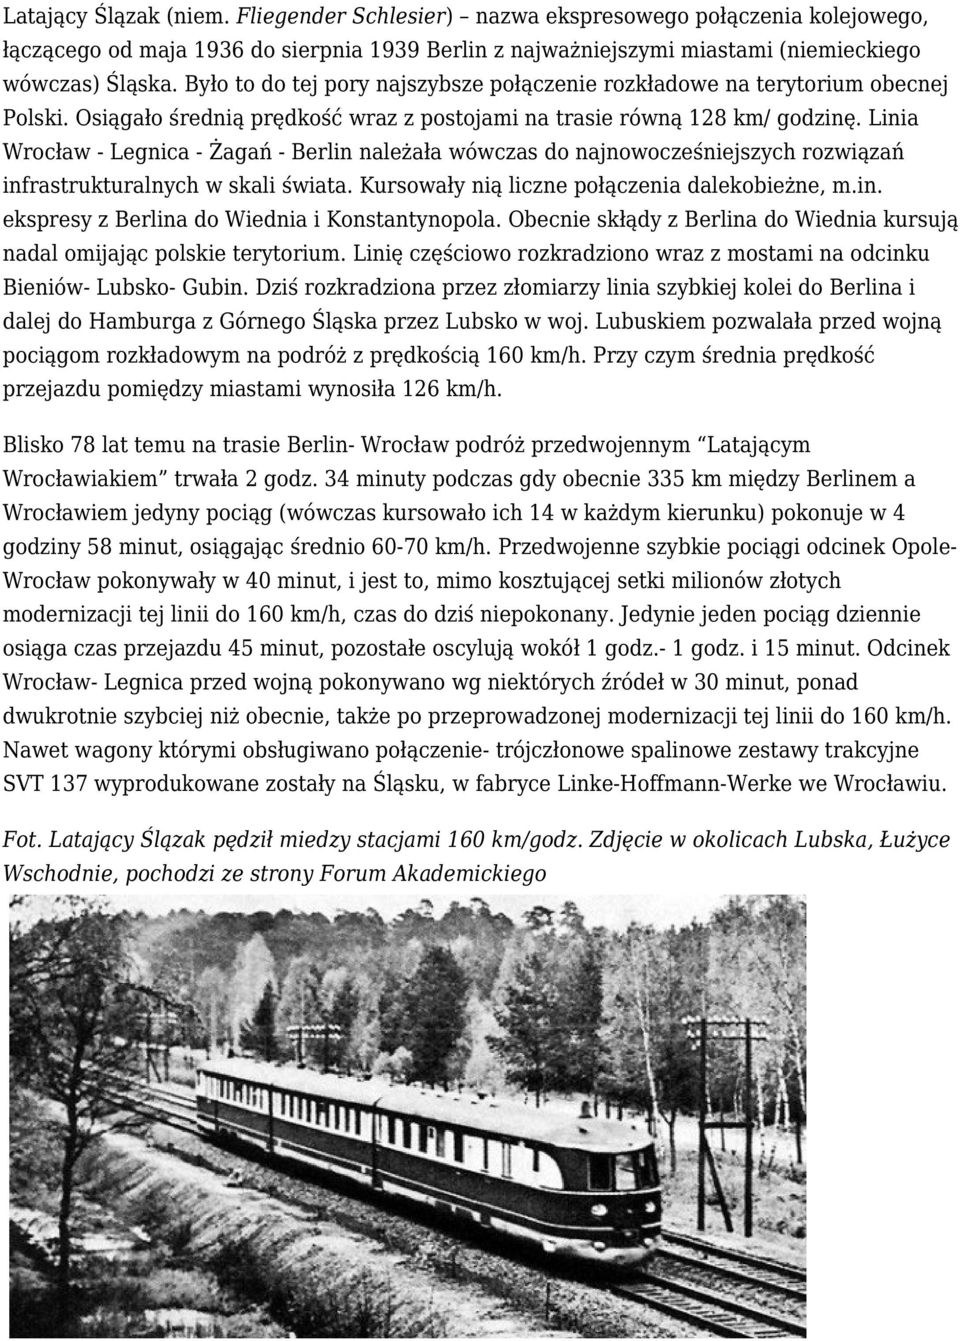 linia Wrocław - Legnica - Żagań - Berlin należała wówczas do najnowocześniejszych rozwiązań infrastrukturalnych w skaliświata.kursowały nią liczne połączenia dalekobieżne, m.in. ekspresy z Berlina do Wiednia i Konstantynopola.